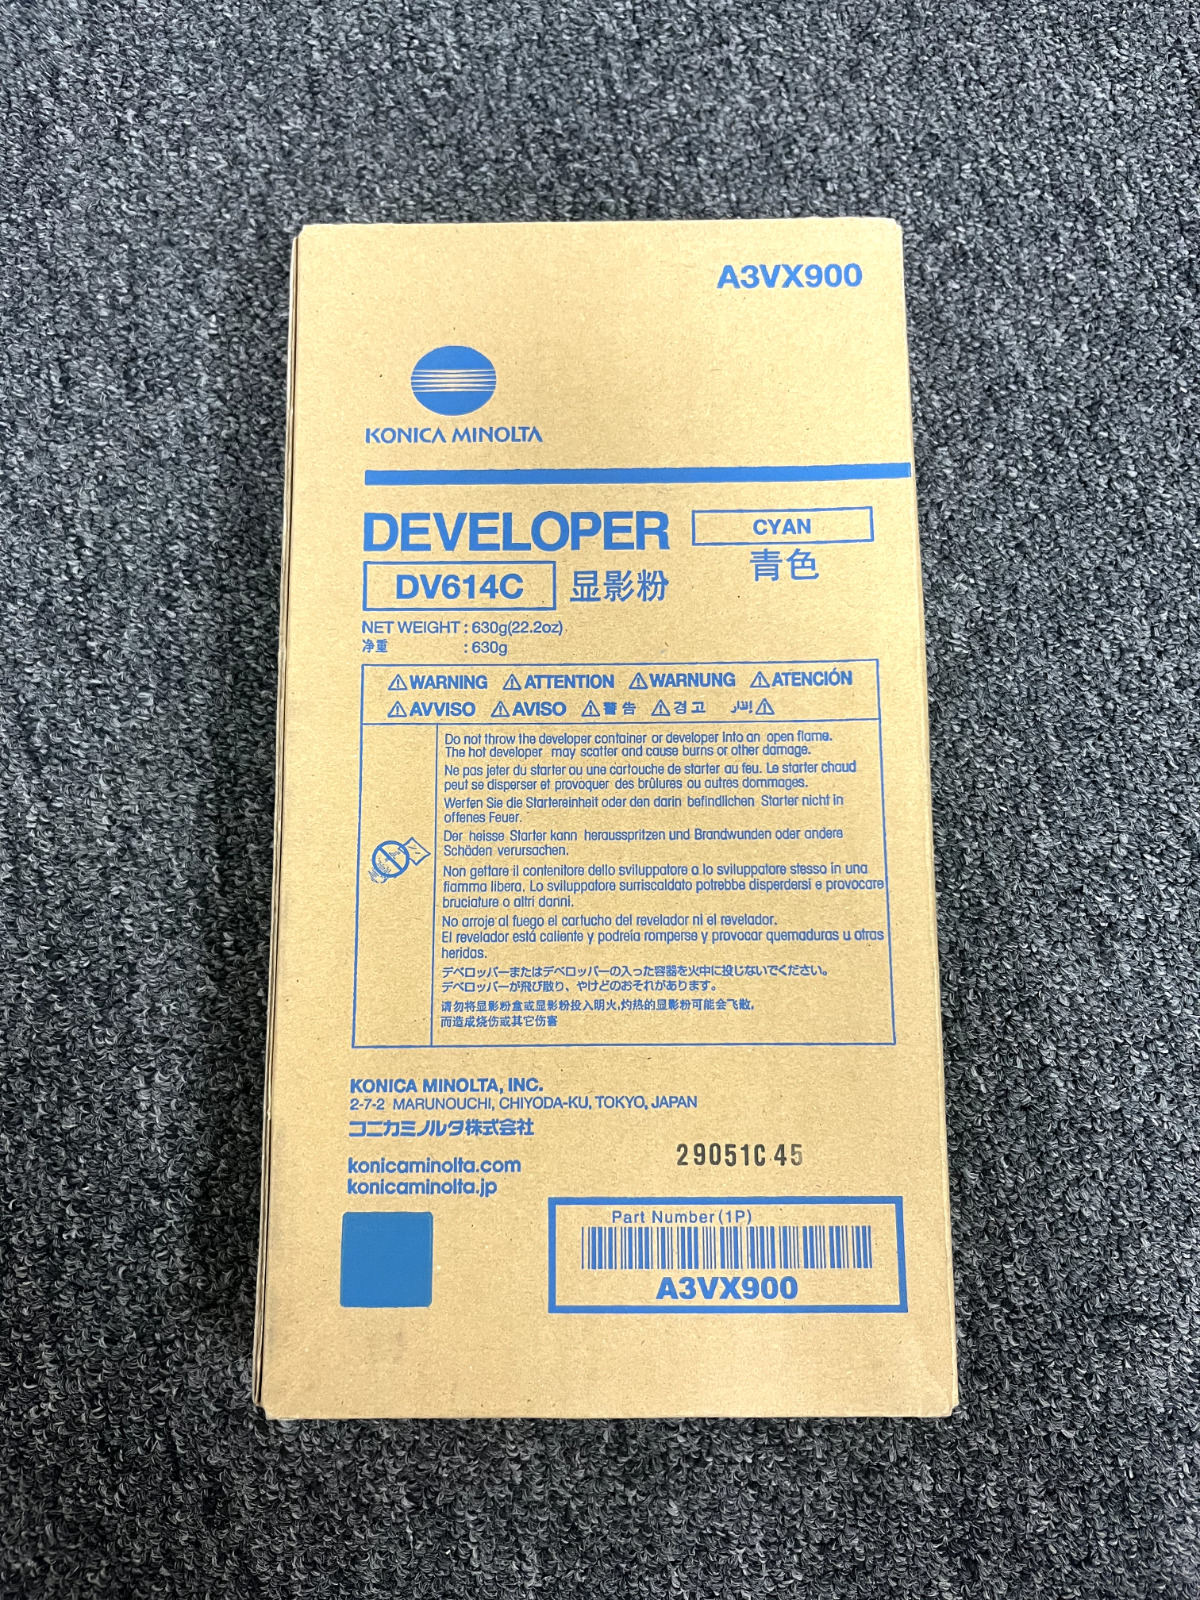 Konica Minolta A3VX900 DV-614C Cyan Developer